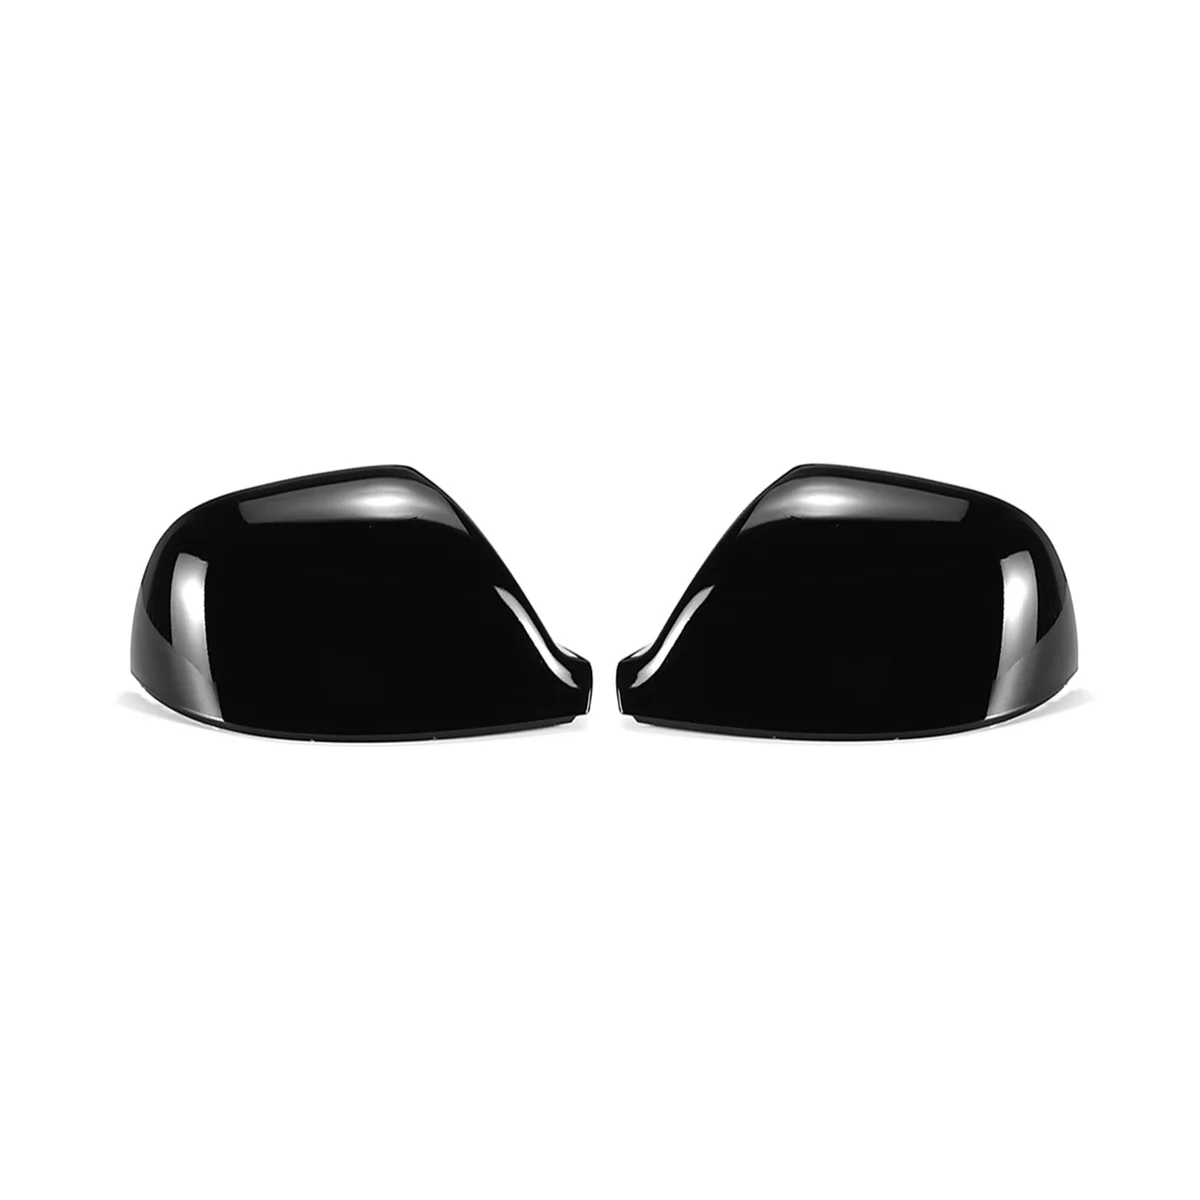 

Крышка для зеркала заднего вида, яркая черная крышка для транспортера T5 T5.1 2010-2015 T6 2016-2019